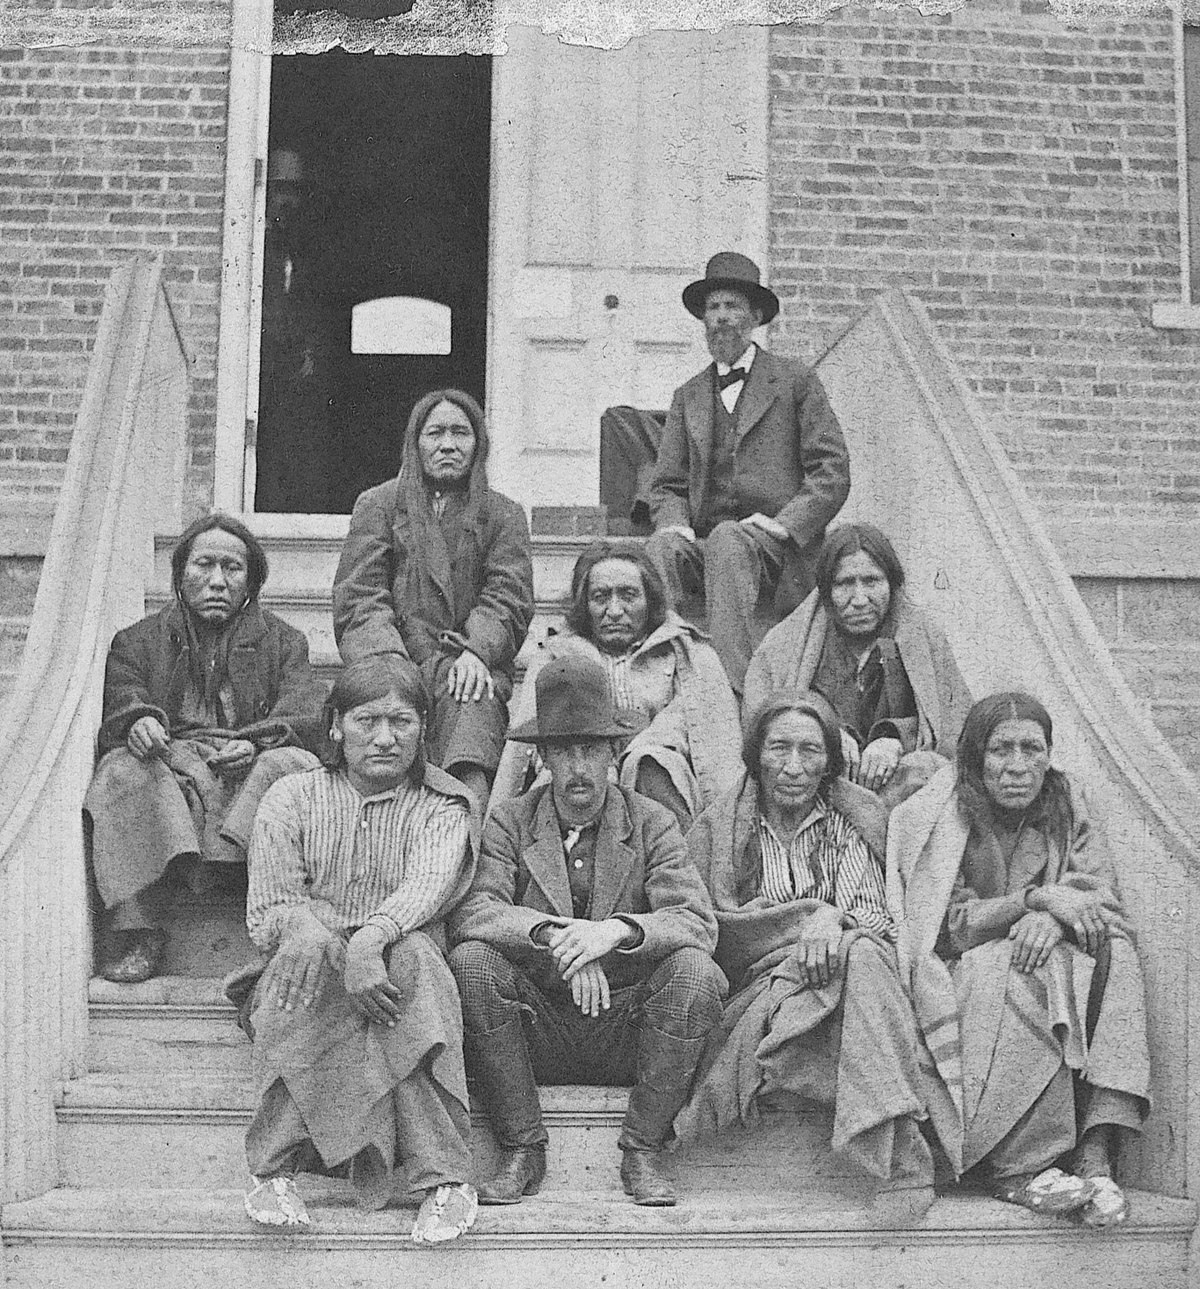 أمريكيون أصليون من قبيلة الـ(شايان) بعد محاولتهم الهرب من المحمية التي خصصت لهم وعودتهم إلى موطنهم، احتُجزوا كمساجين في (كانساس) سنة 1879.